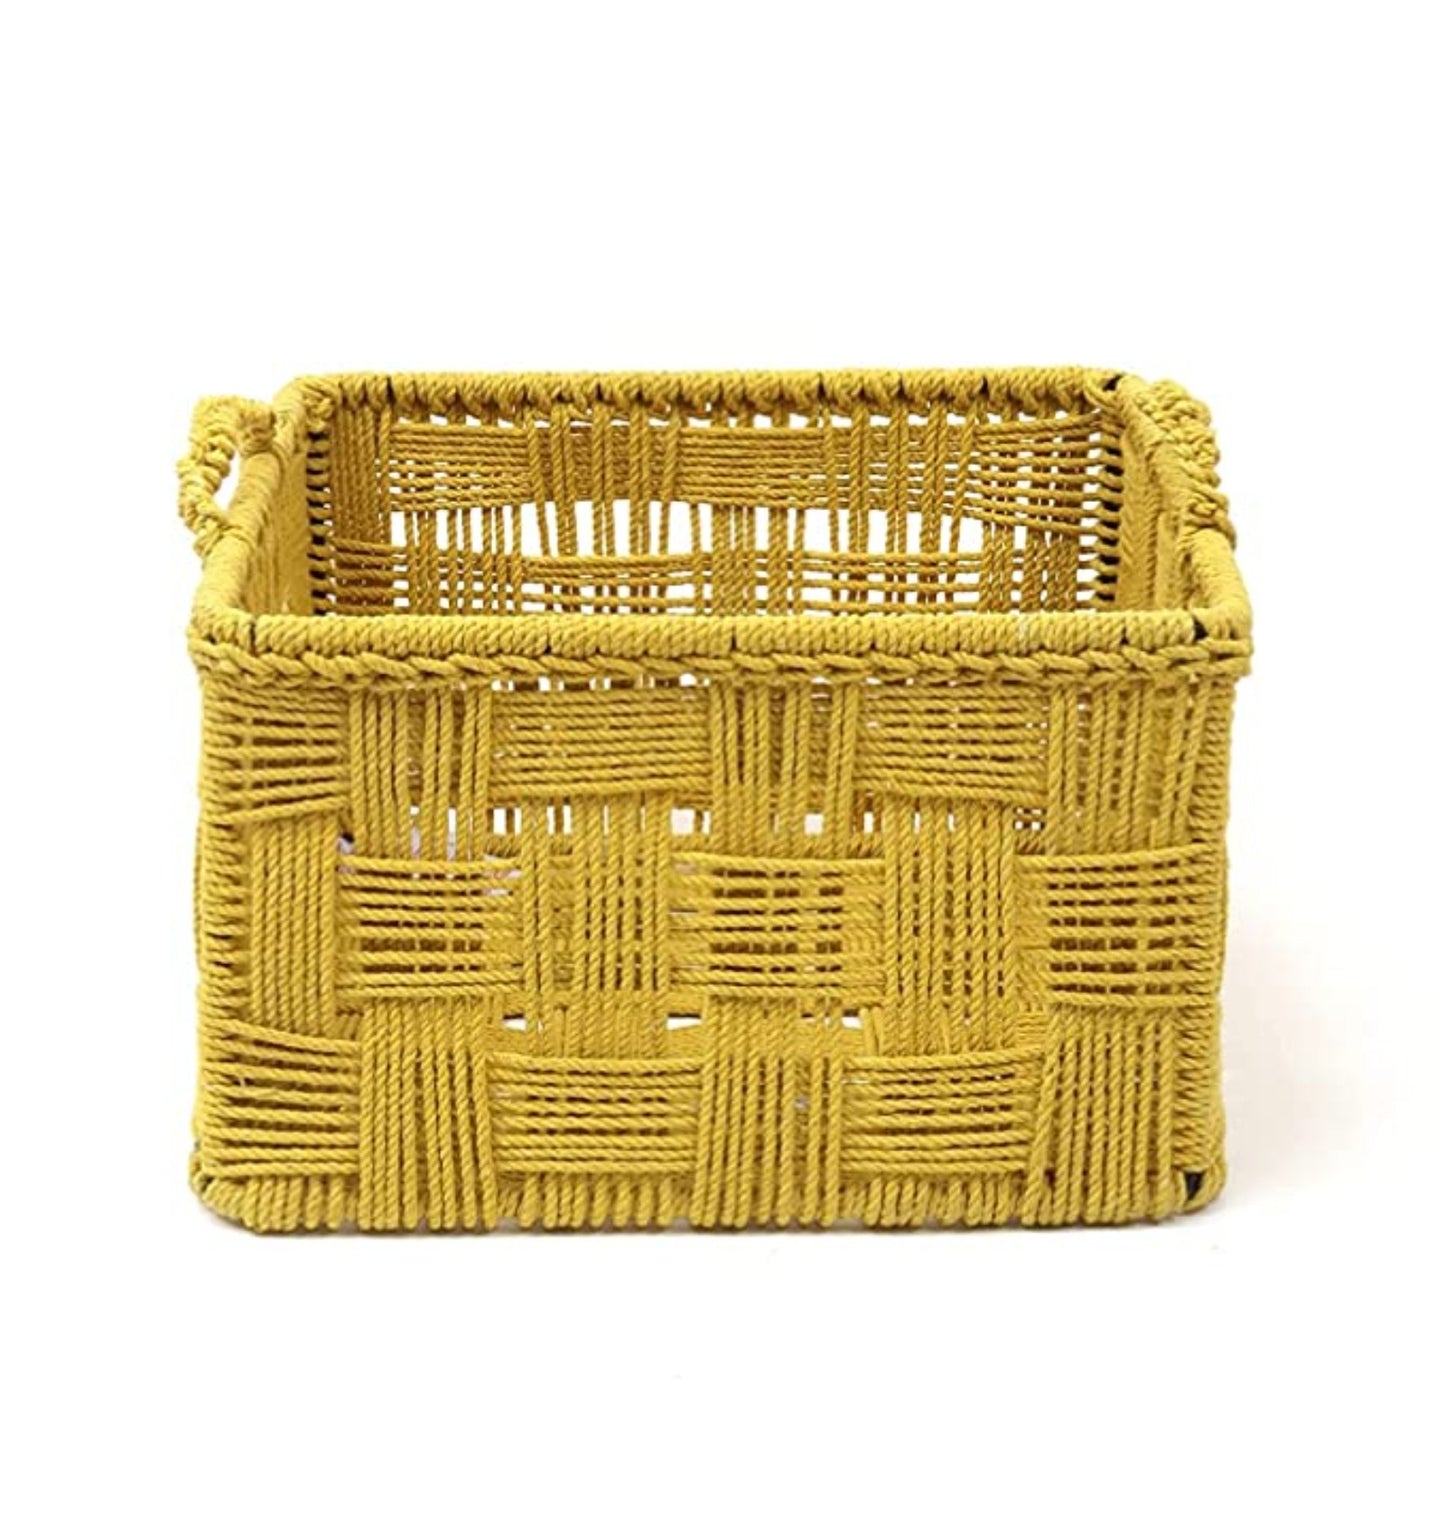 Cotton Rope Basket Yellow (Large)